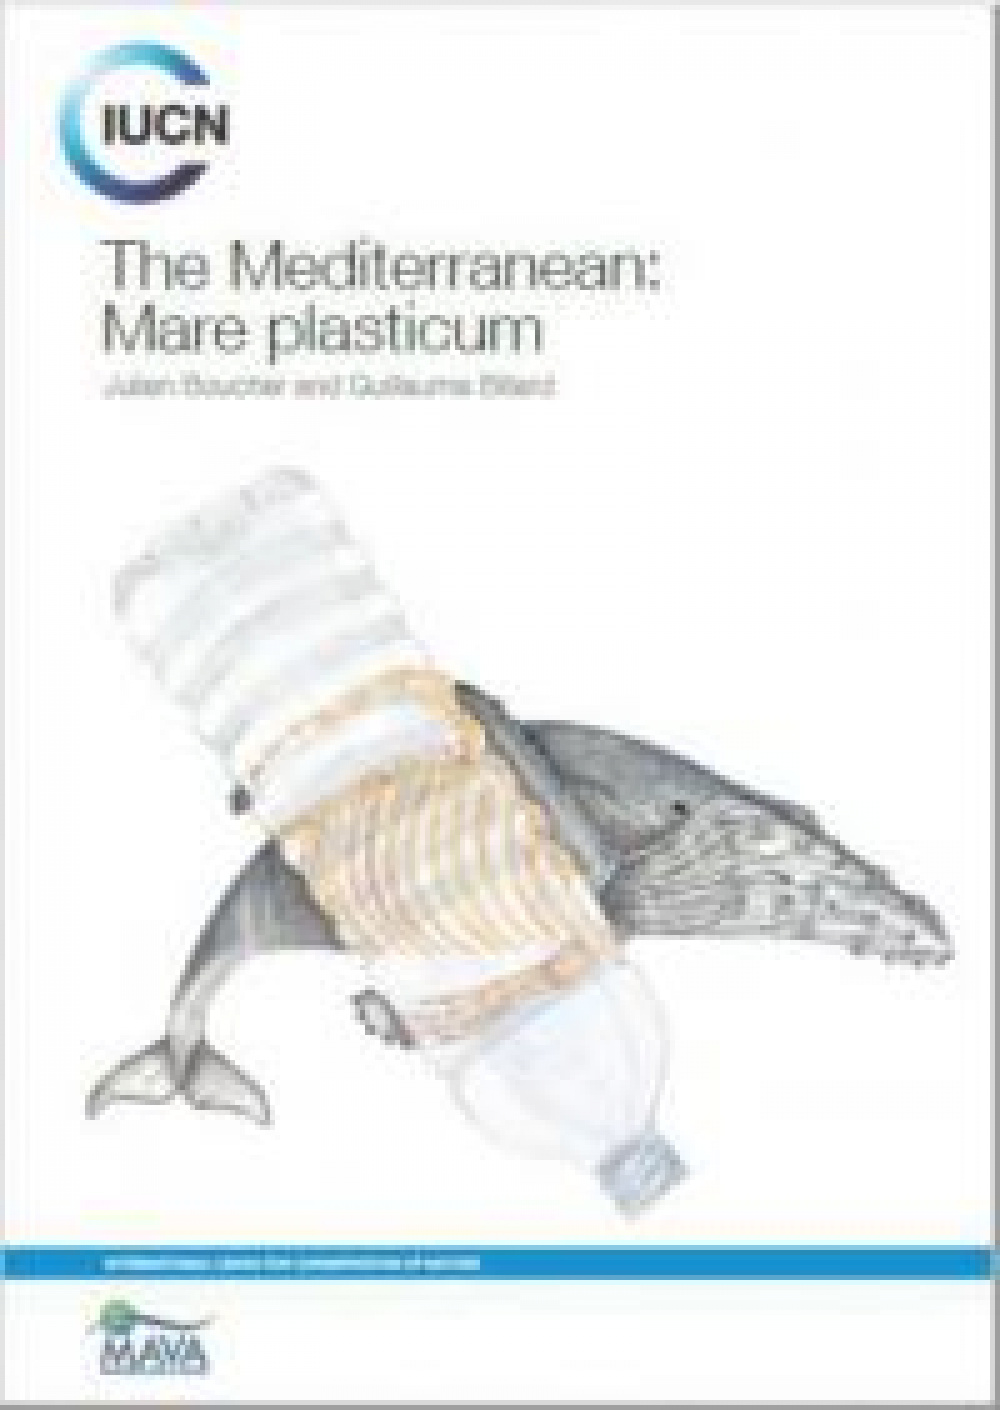 Rapport "The Mediterranean: Mare Plasticum"